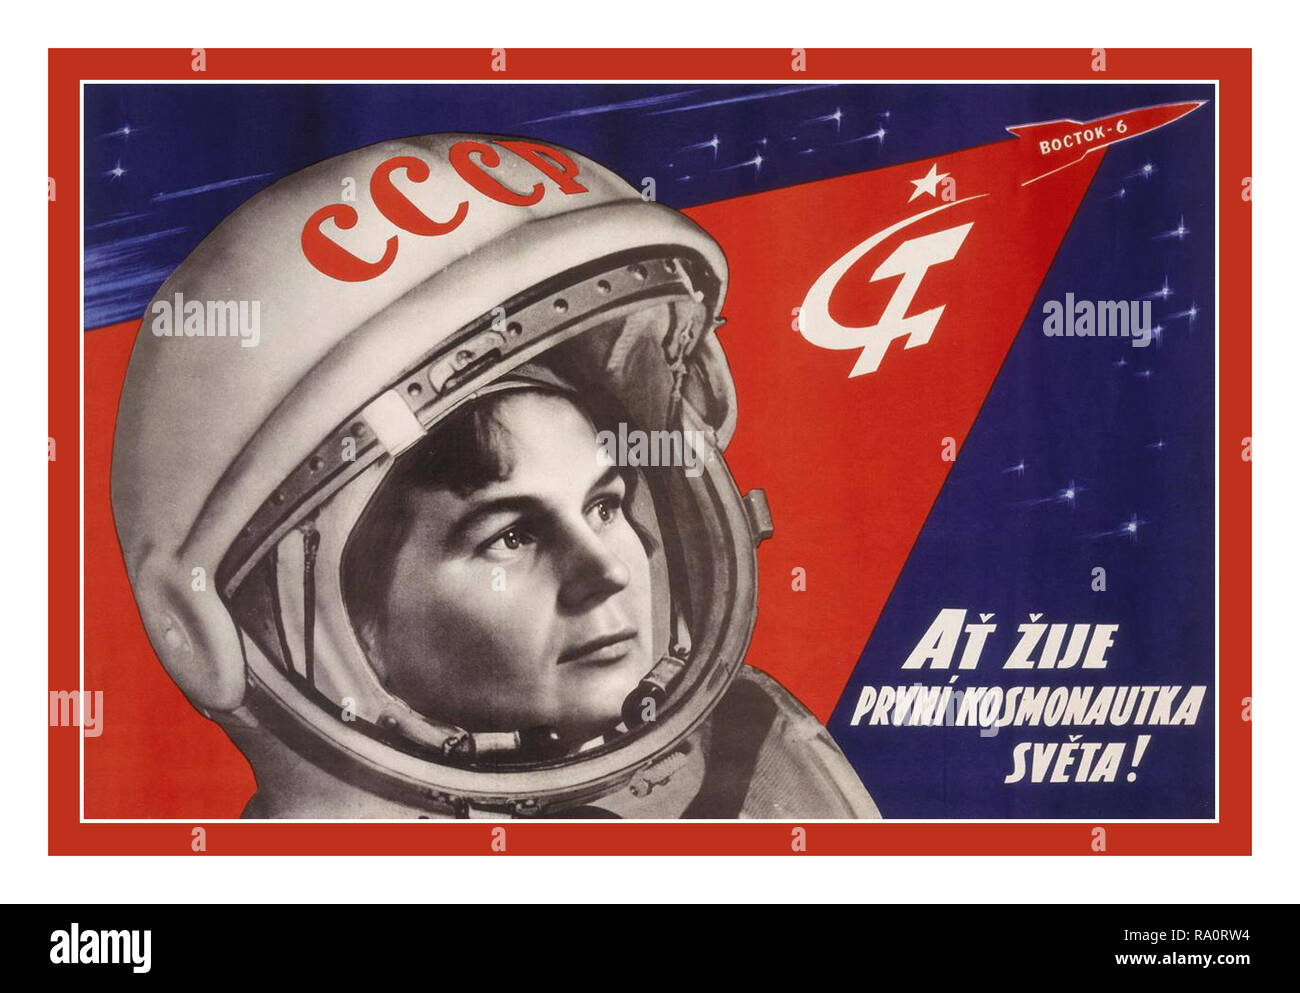 Vintage 1960 URSS Soviética Rusa carrera espacial cartel propagandístico "Gloria a la primera mujer cosmonauta!" 16 de junio de 1963, a la edad de 26 años, Valentina Tereshkova se convirtió en la primera mujer en volar en el espacio. Su misión de tres días fue el 12 de vuelo espacial humano de la historia, tras varios ruso Vostok y American Mercury vuelos. Amarrado a su asiento de eyección, Tereshkova cabalgó dentro del 7,5 pies de ancho (2,3 metros) de cabina presurizada de Vostok-6 en una misión espacial de 3 días. Foto de stock